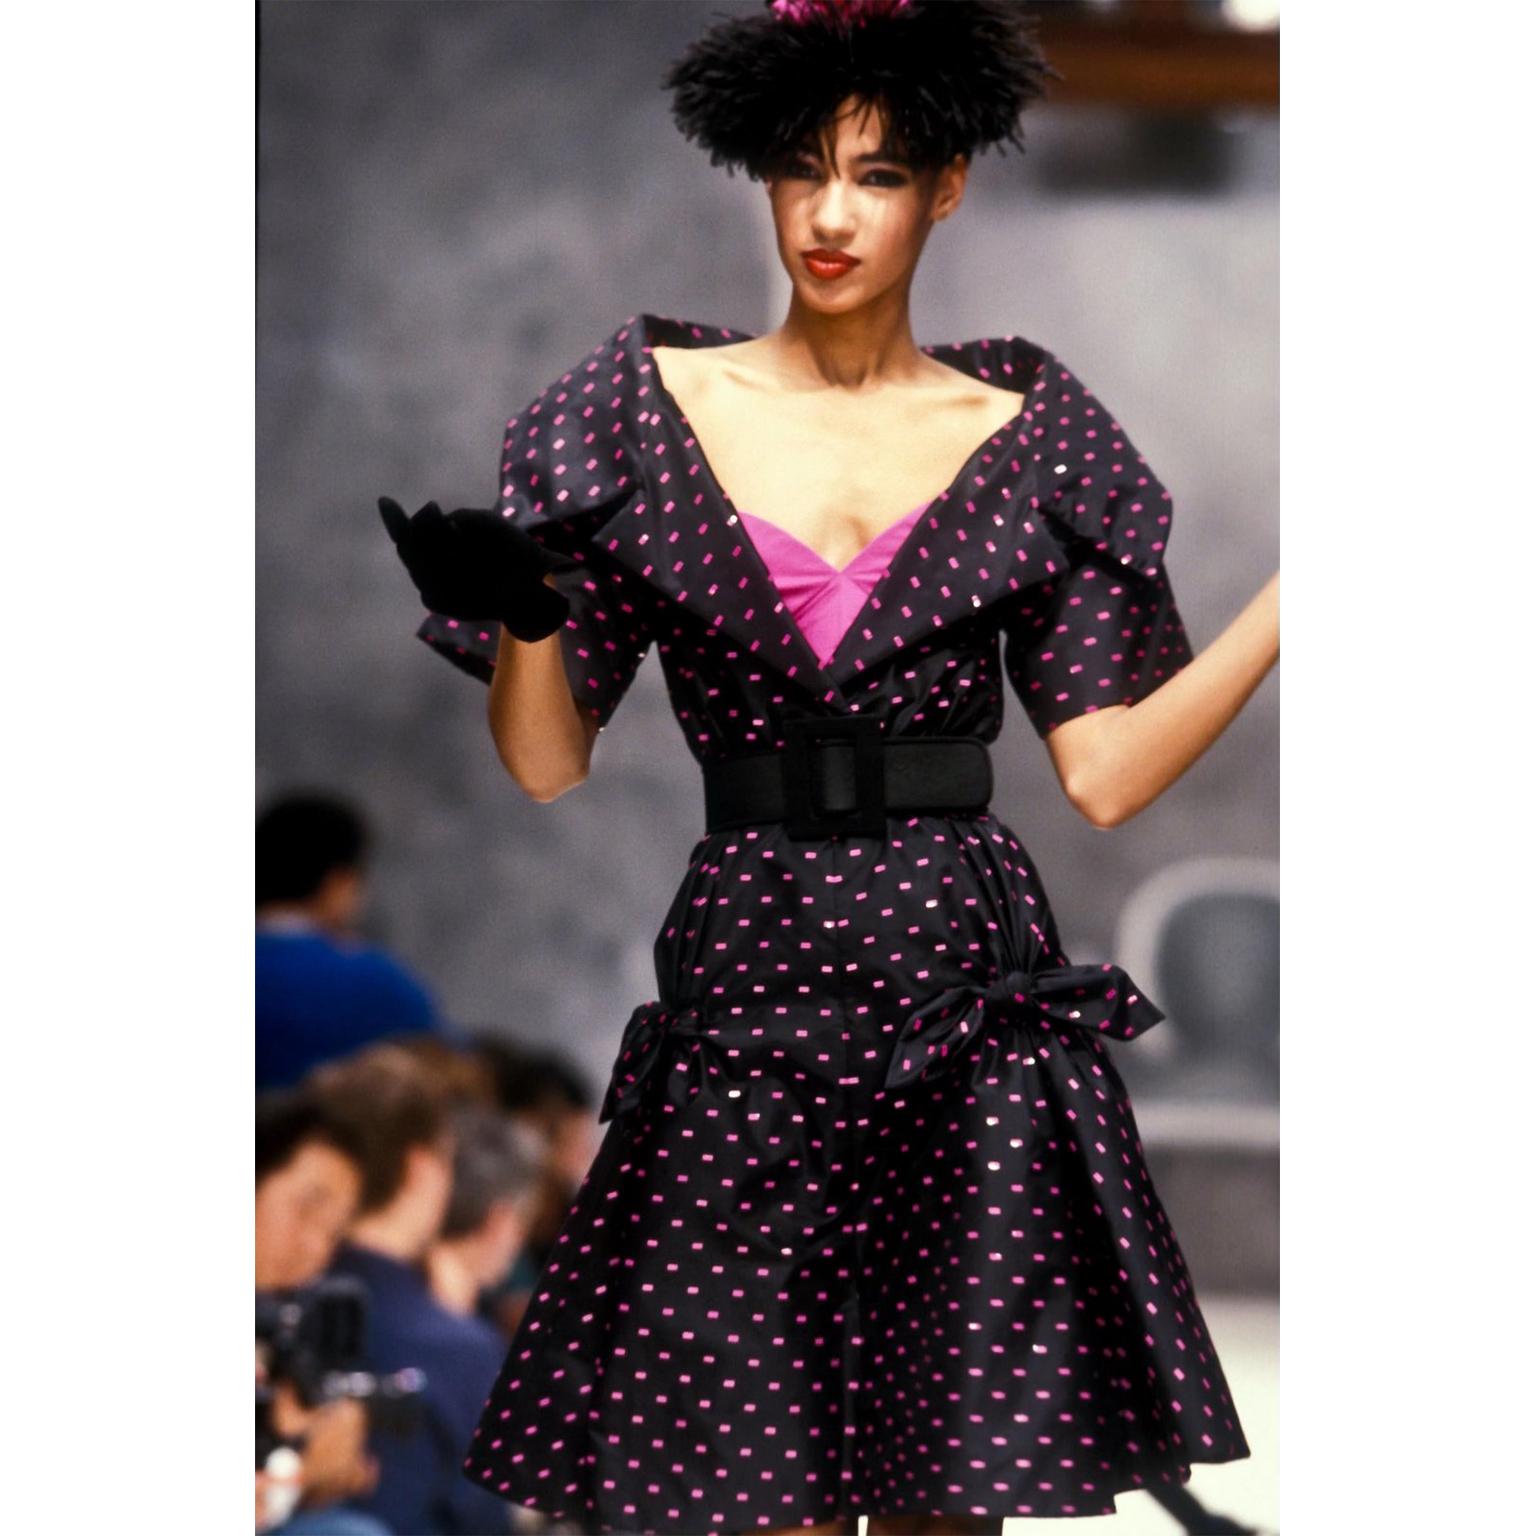 Dieses atemberaubende Haute-Couture-Abendkleid aus der Frühjahr-Sommer-Kollektion 1987 von Christian Dior ist in einem gewagten Magenta-Rosa gehalten. Dieses Kleid ist ein Beispiel für die außergewöhnliche Kunstfertigkeit von Marc Bohan. Das Kleid